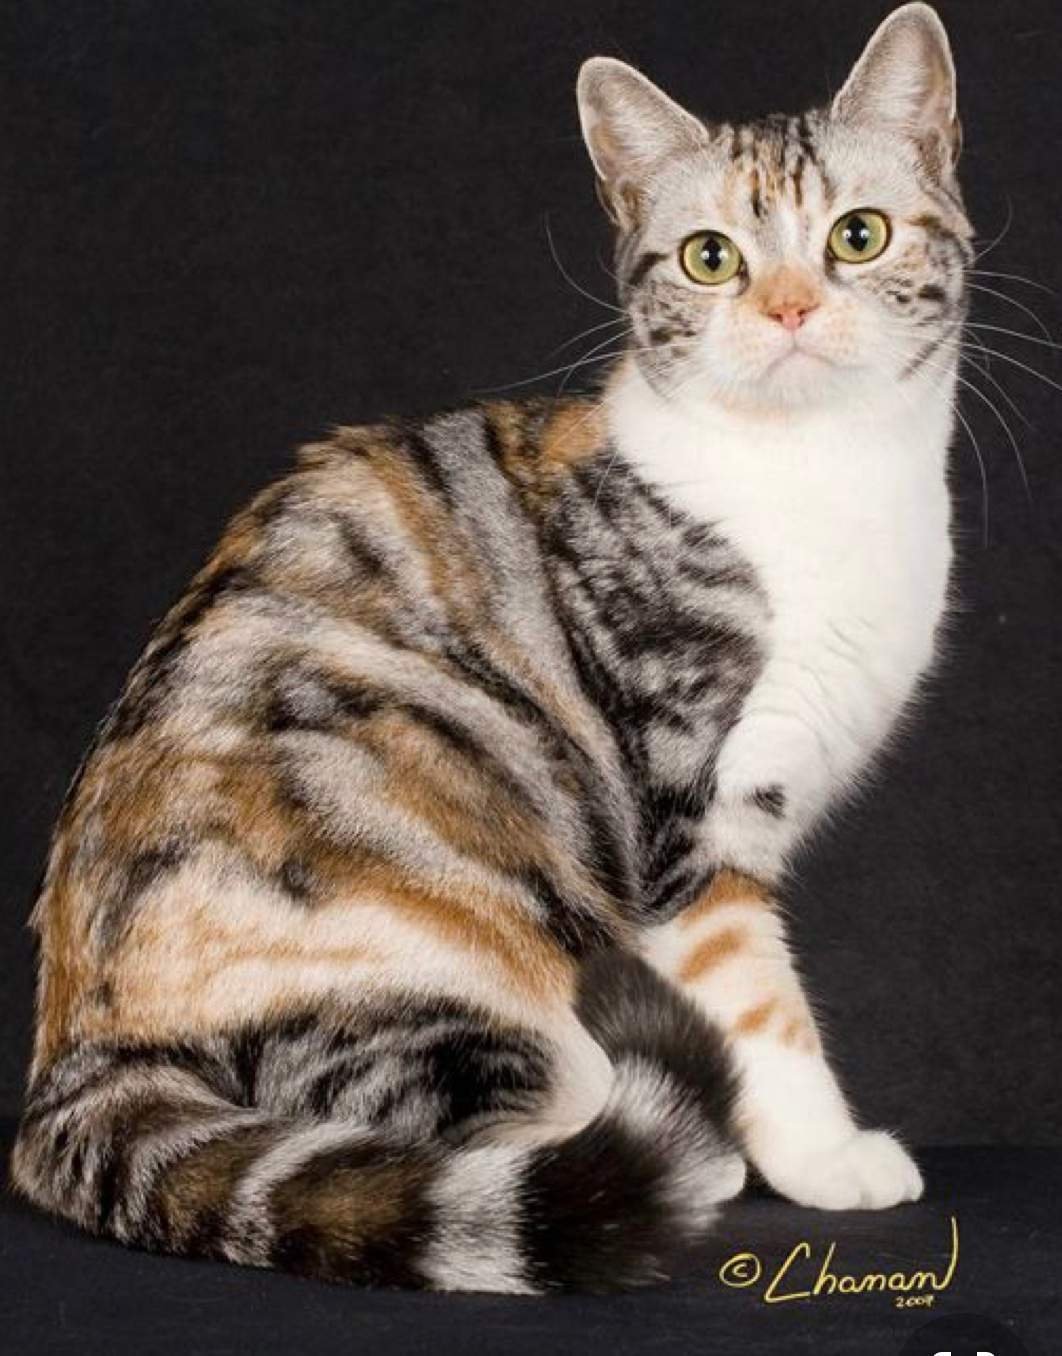 Пестрый окрас породы. Американская жесткошерстная кошка трехцветная. Американская короткошерстная табби. Черепаховый табби окрас кошек. Американская короткошерстная кошка табби.